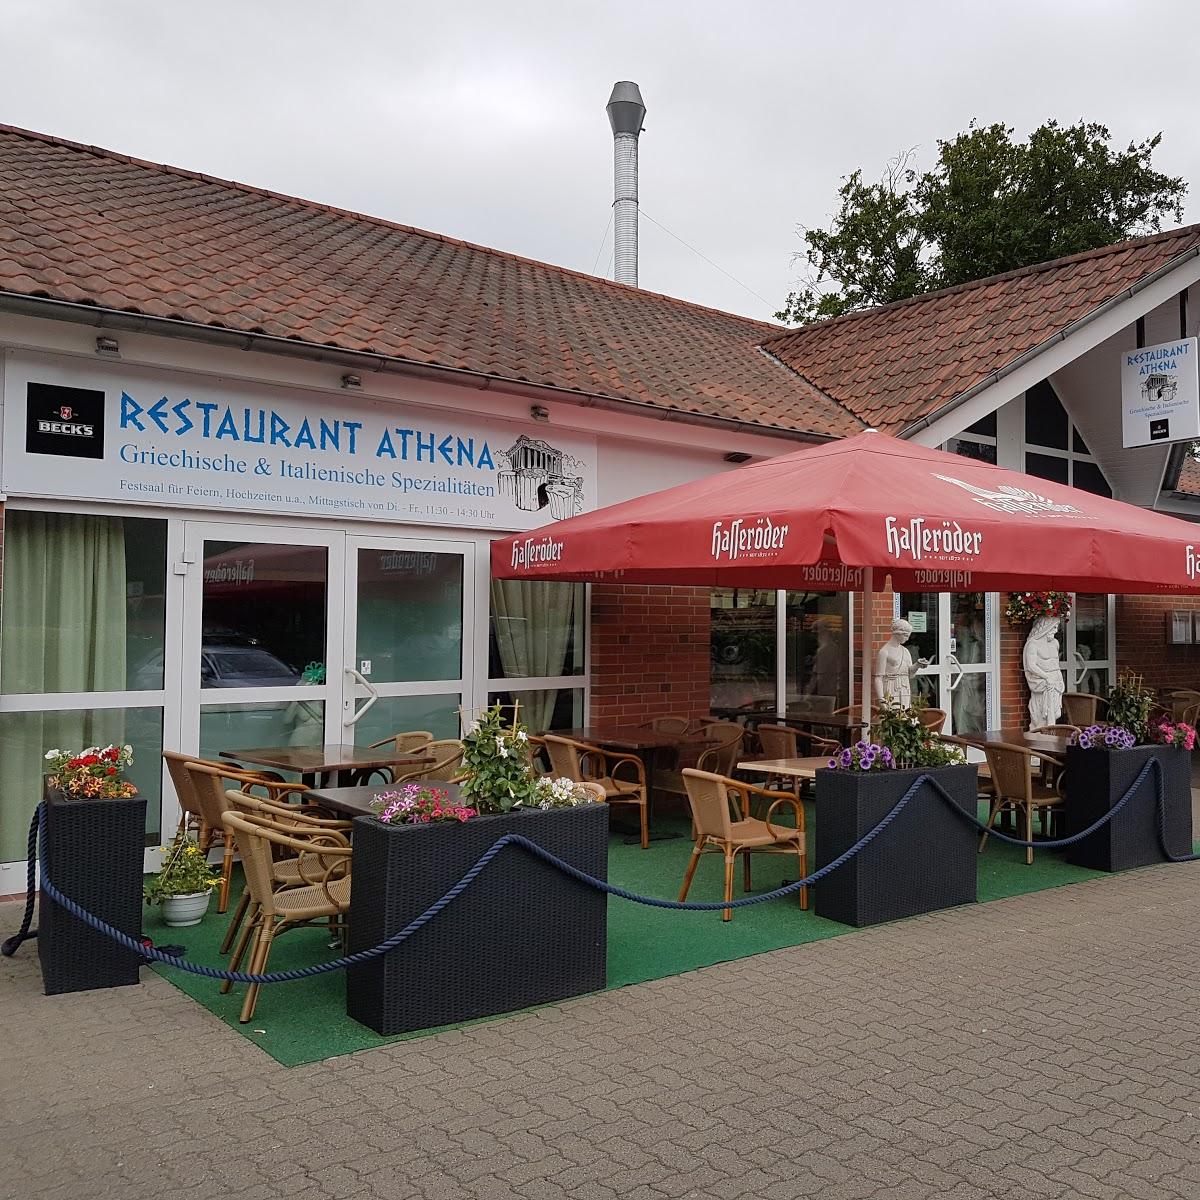 Restaurant "Restaurant Athena" in  Hodenhagen